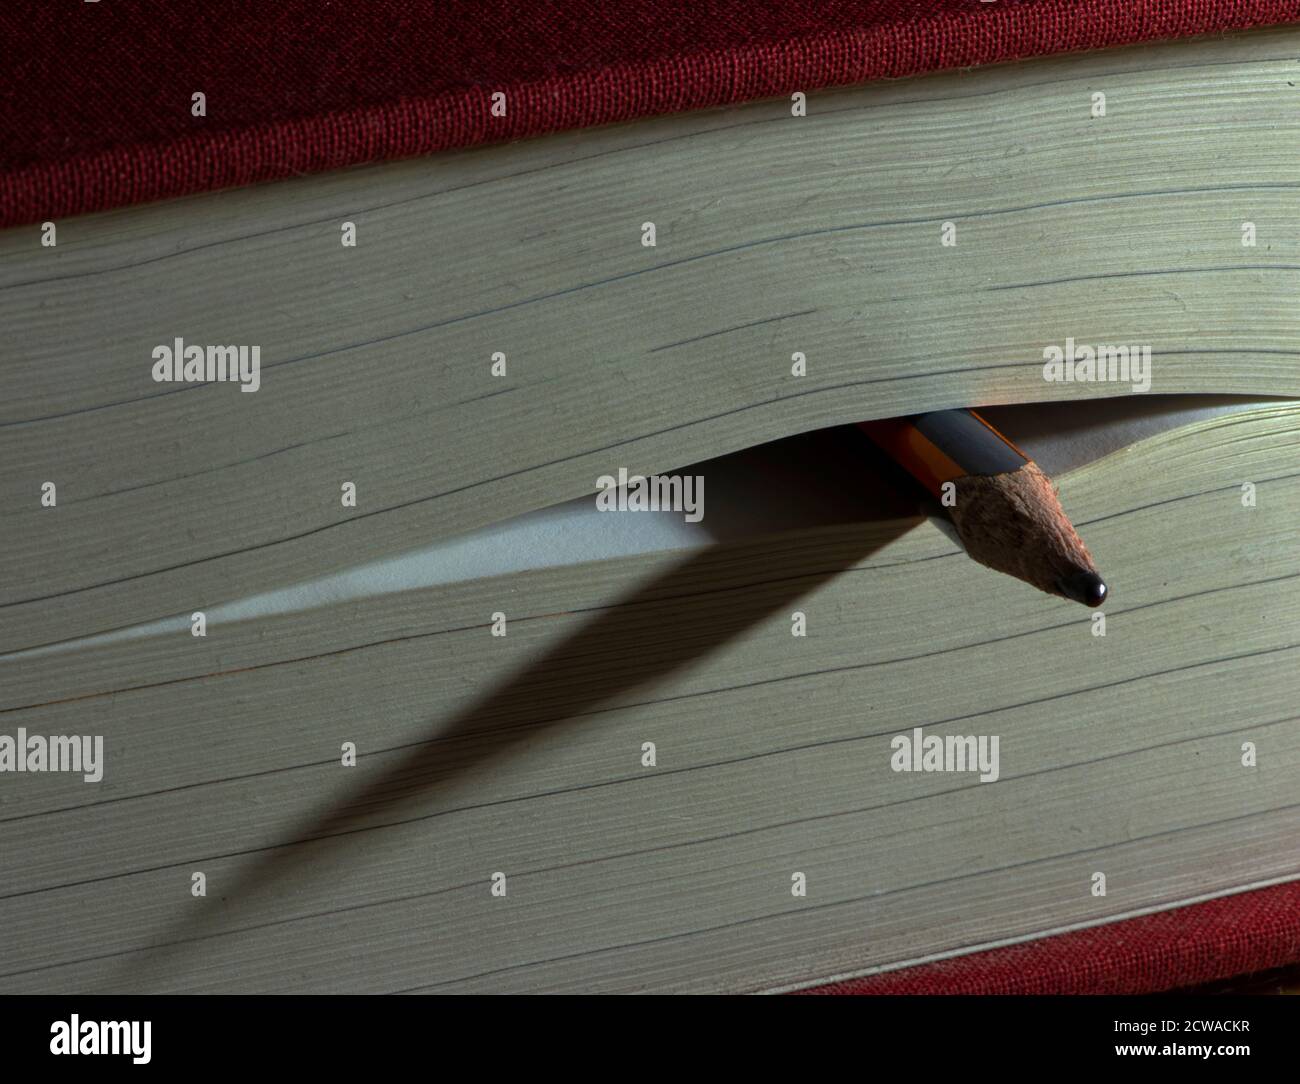 Bleistift als Lesezeichen in einem geschlossenen dicken Buch wirft Schatten auf seinen Seiten. Konzept: Lesen, studieren, Wissen erwerben. Stockfoto